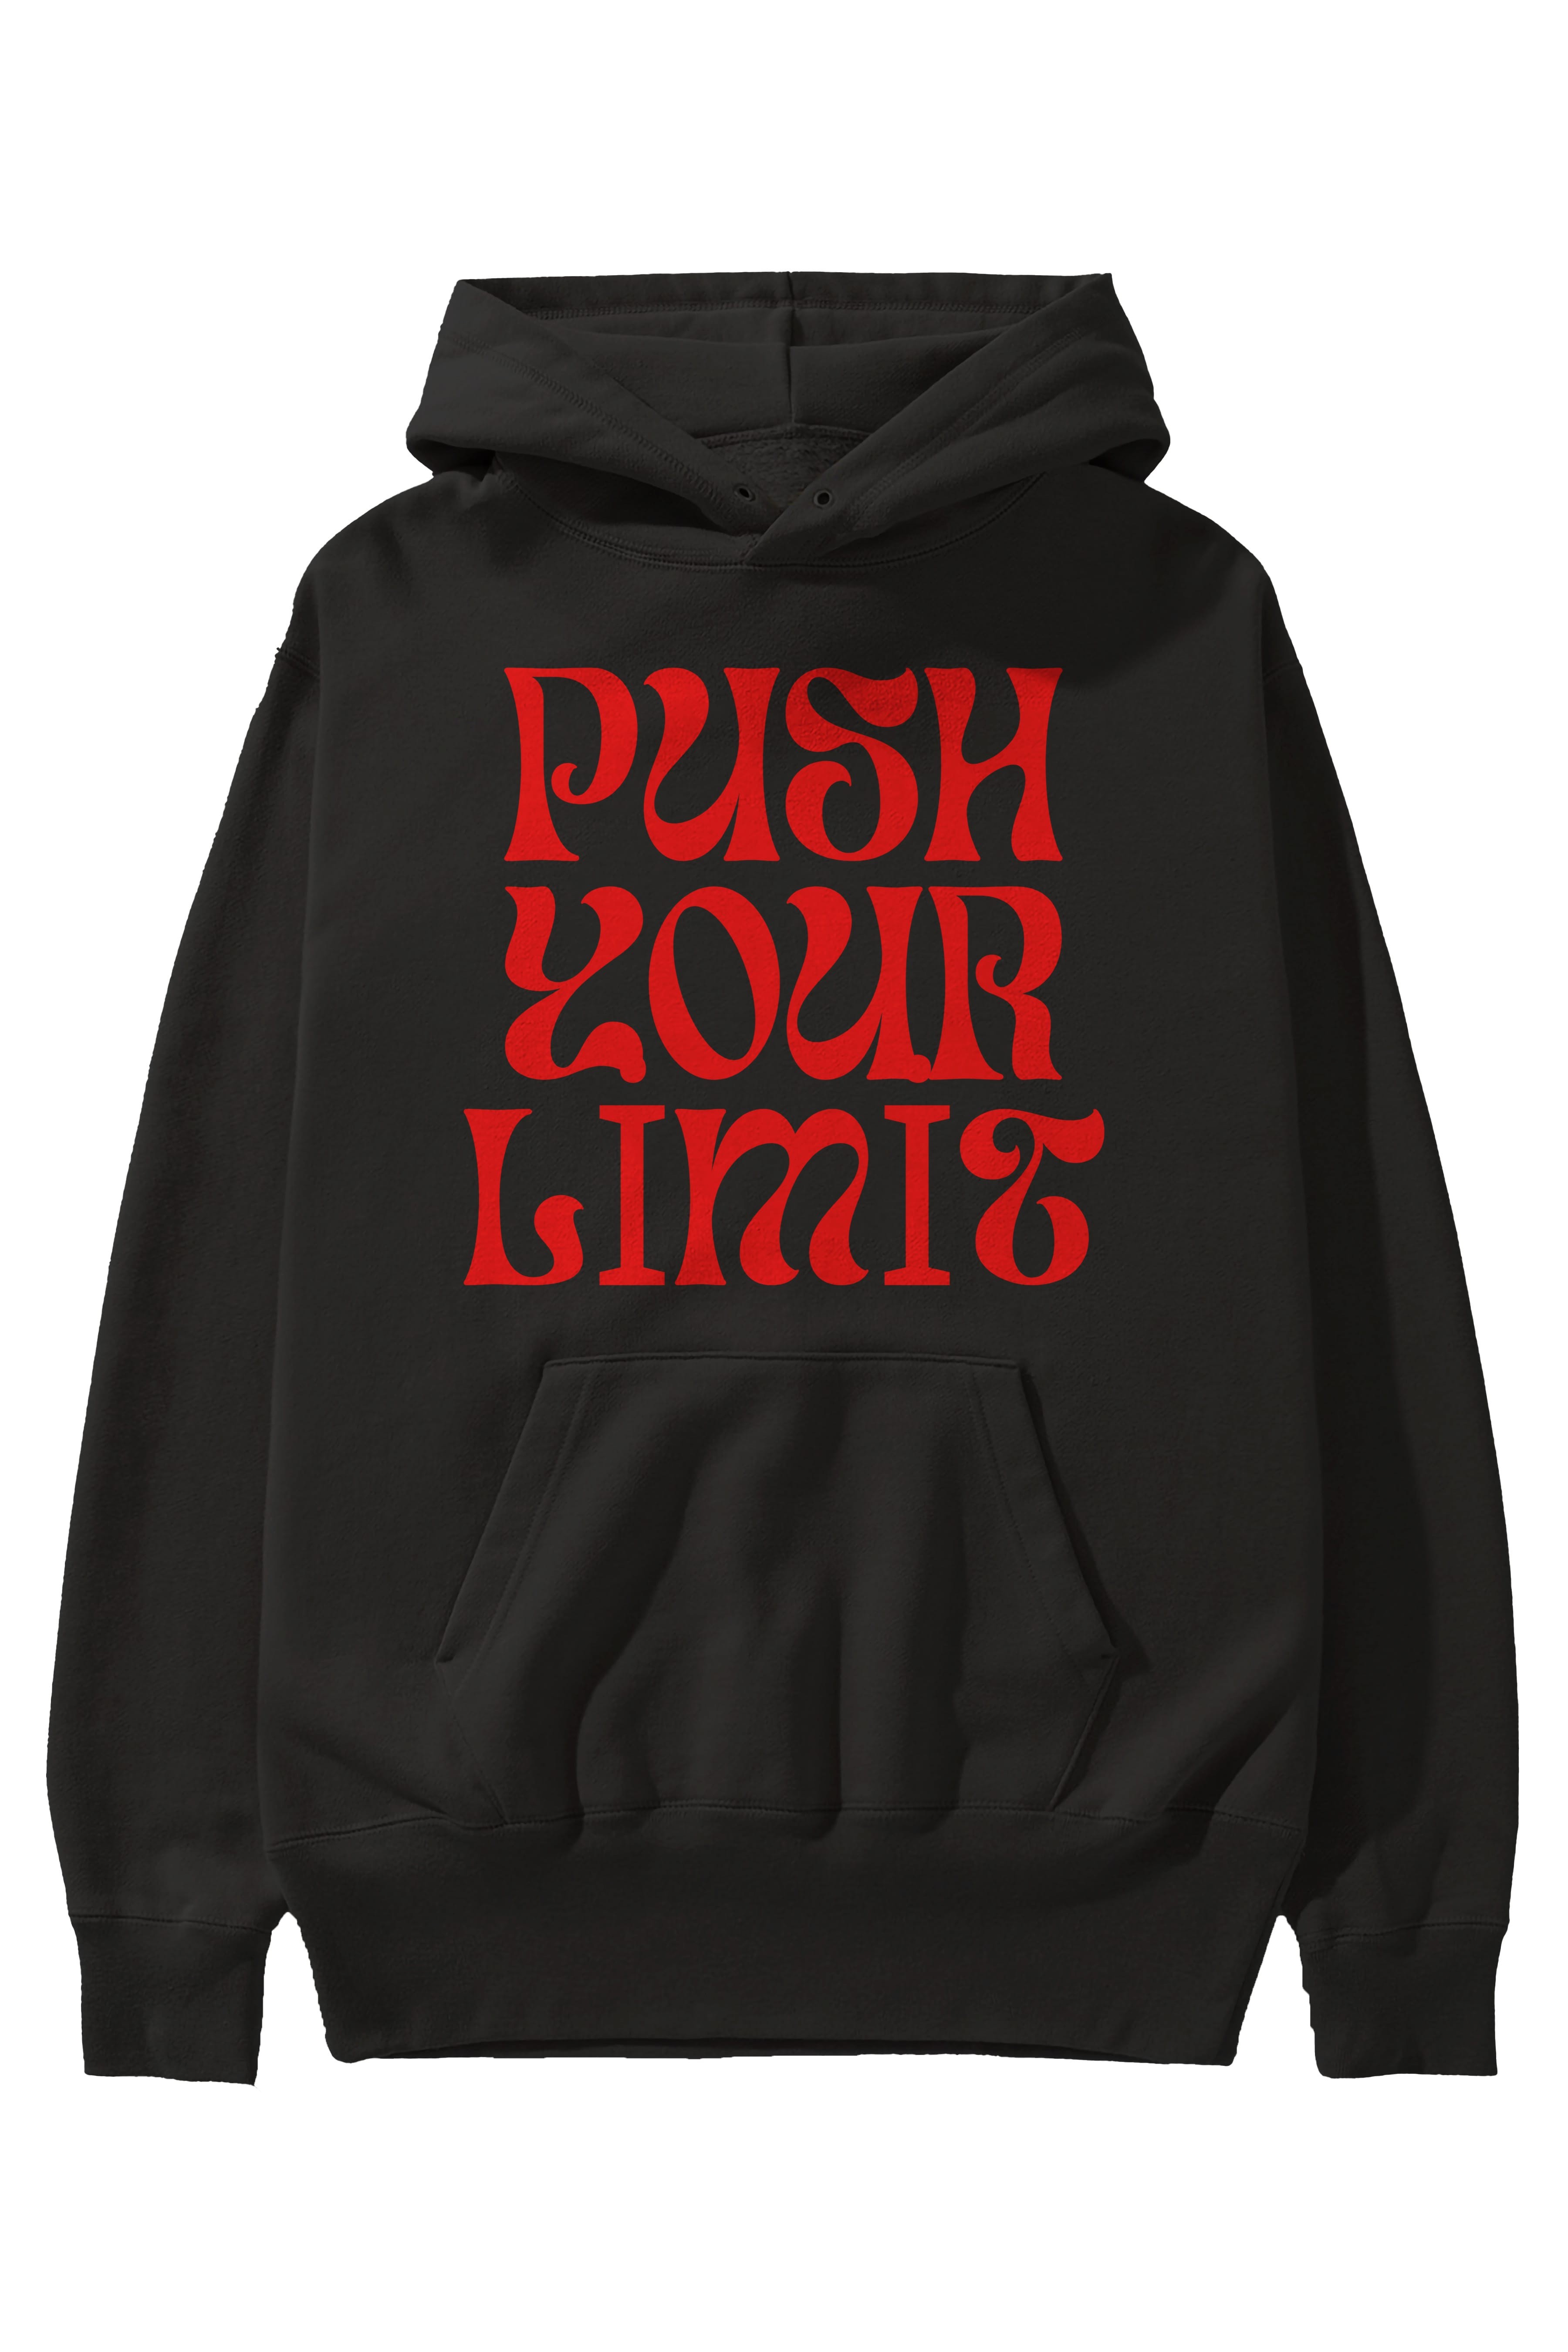 Push Your Limit Yazılı 2 Ön Baskılı Oversize Hoodie Kapüşonlu Sweatshirt Erkek Kadın Unisex